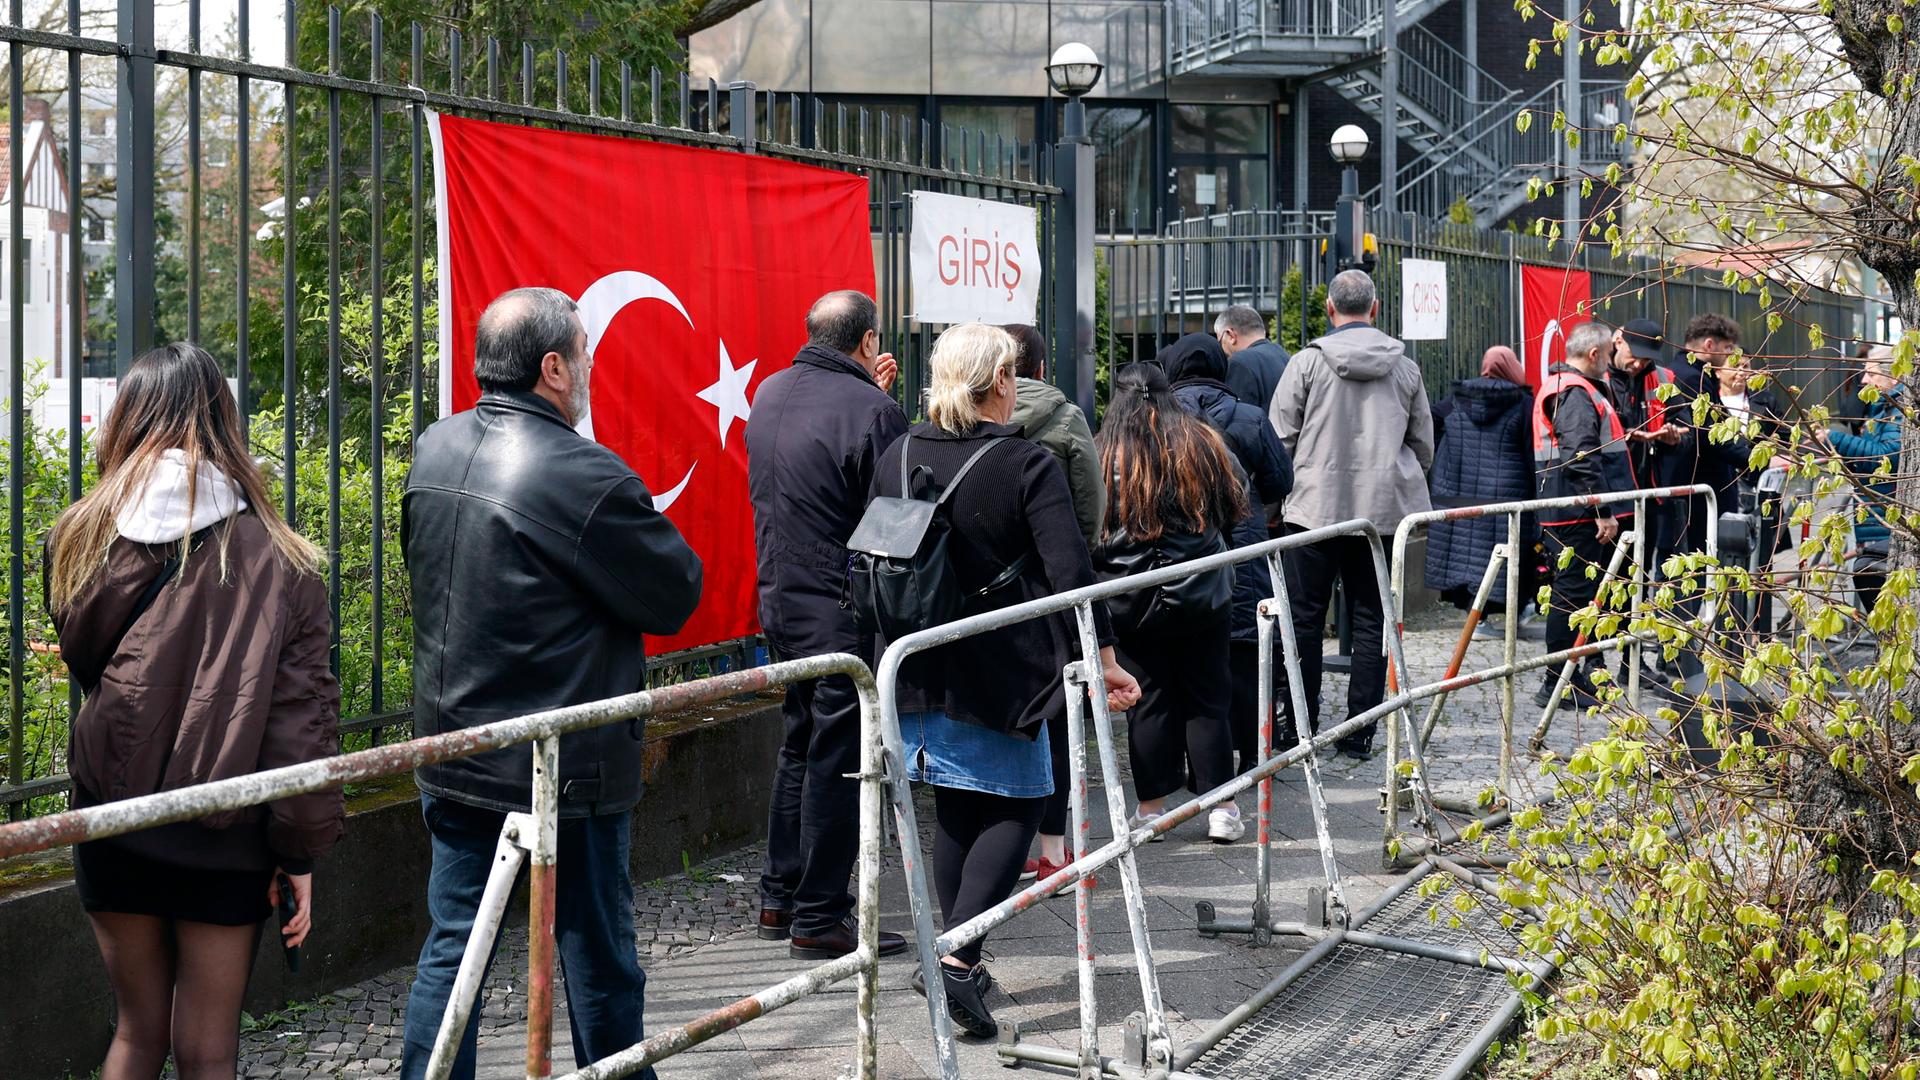 Warteschlange vor dem türkischen Generalkonsulat in Berlin. Wahlberechtigte türkische Staatsbürger in Deutschland geben ihre Stimmen zur türkischen Parlaments- und Präsidentschaftswahl ab